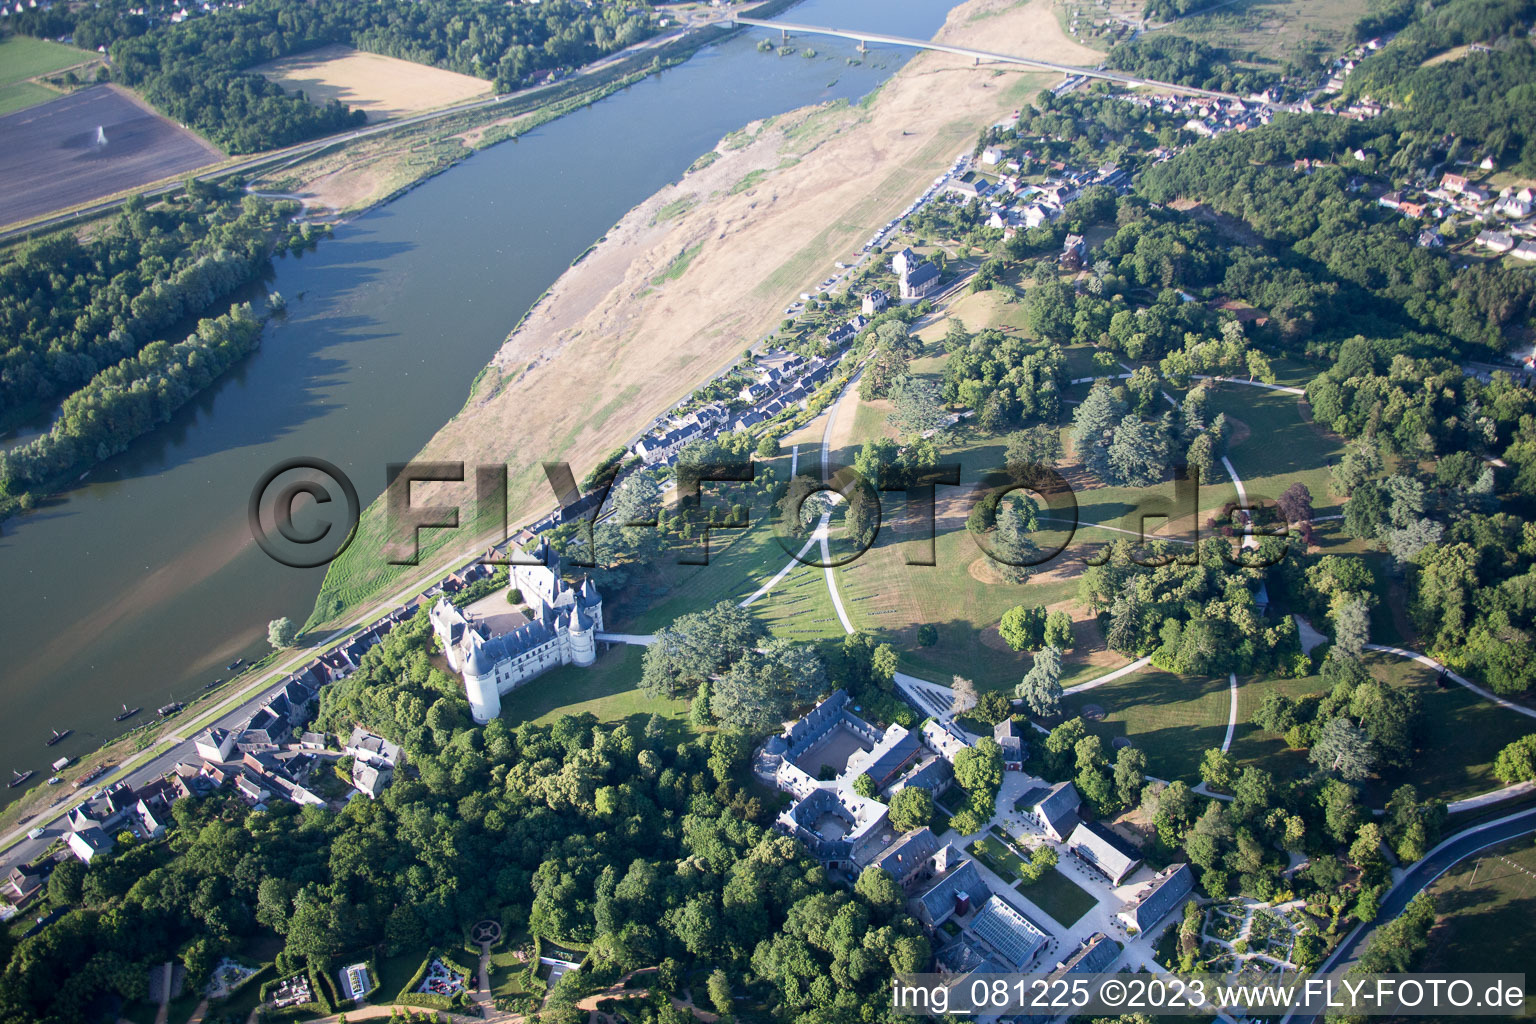 Chaumont-sur-Loire im Bundesland Loir-et-Cher, Frankreich von der Drohne aus gesehen